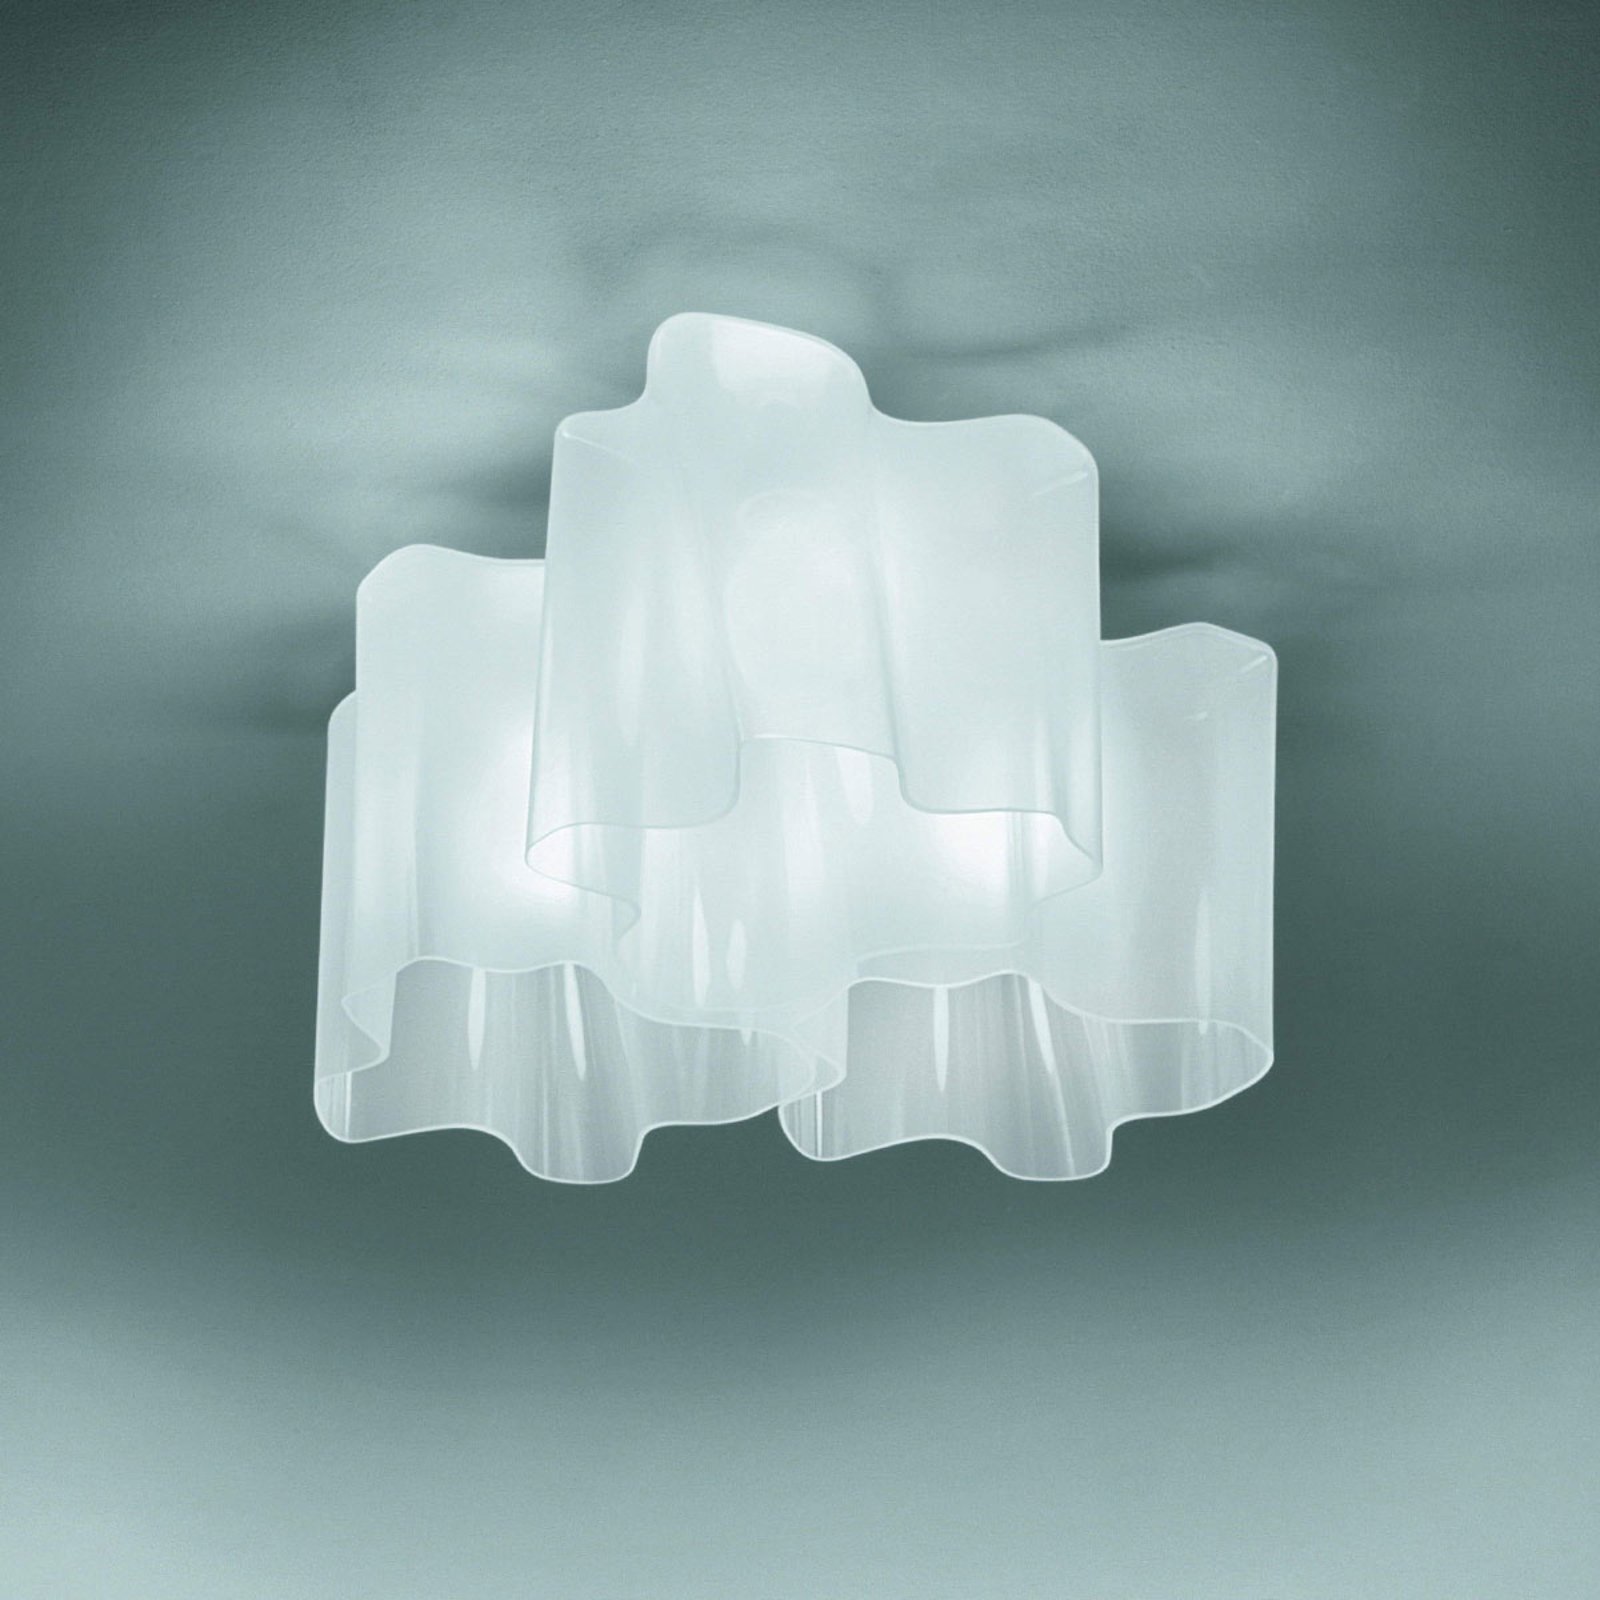 Artemide Logico plafonnier 3 lampes 66x66cm blanc